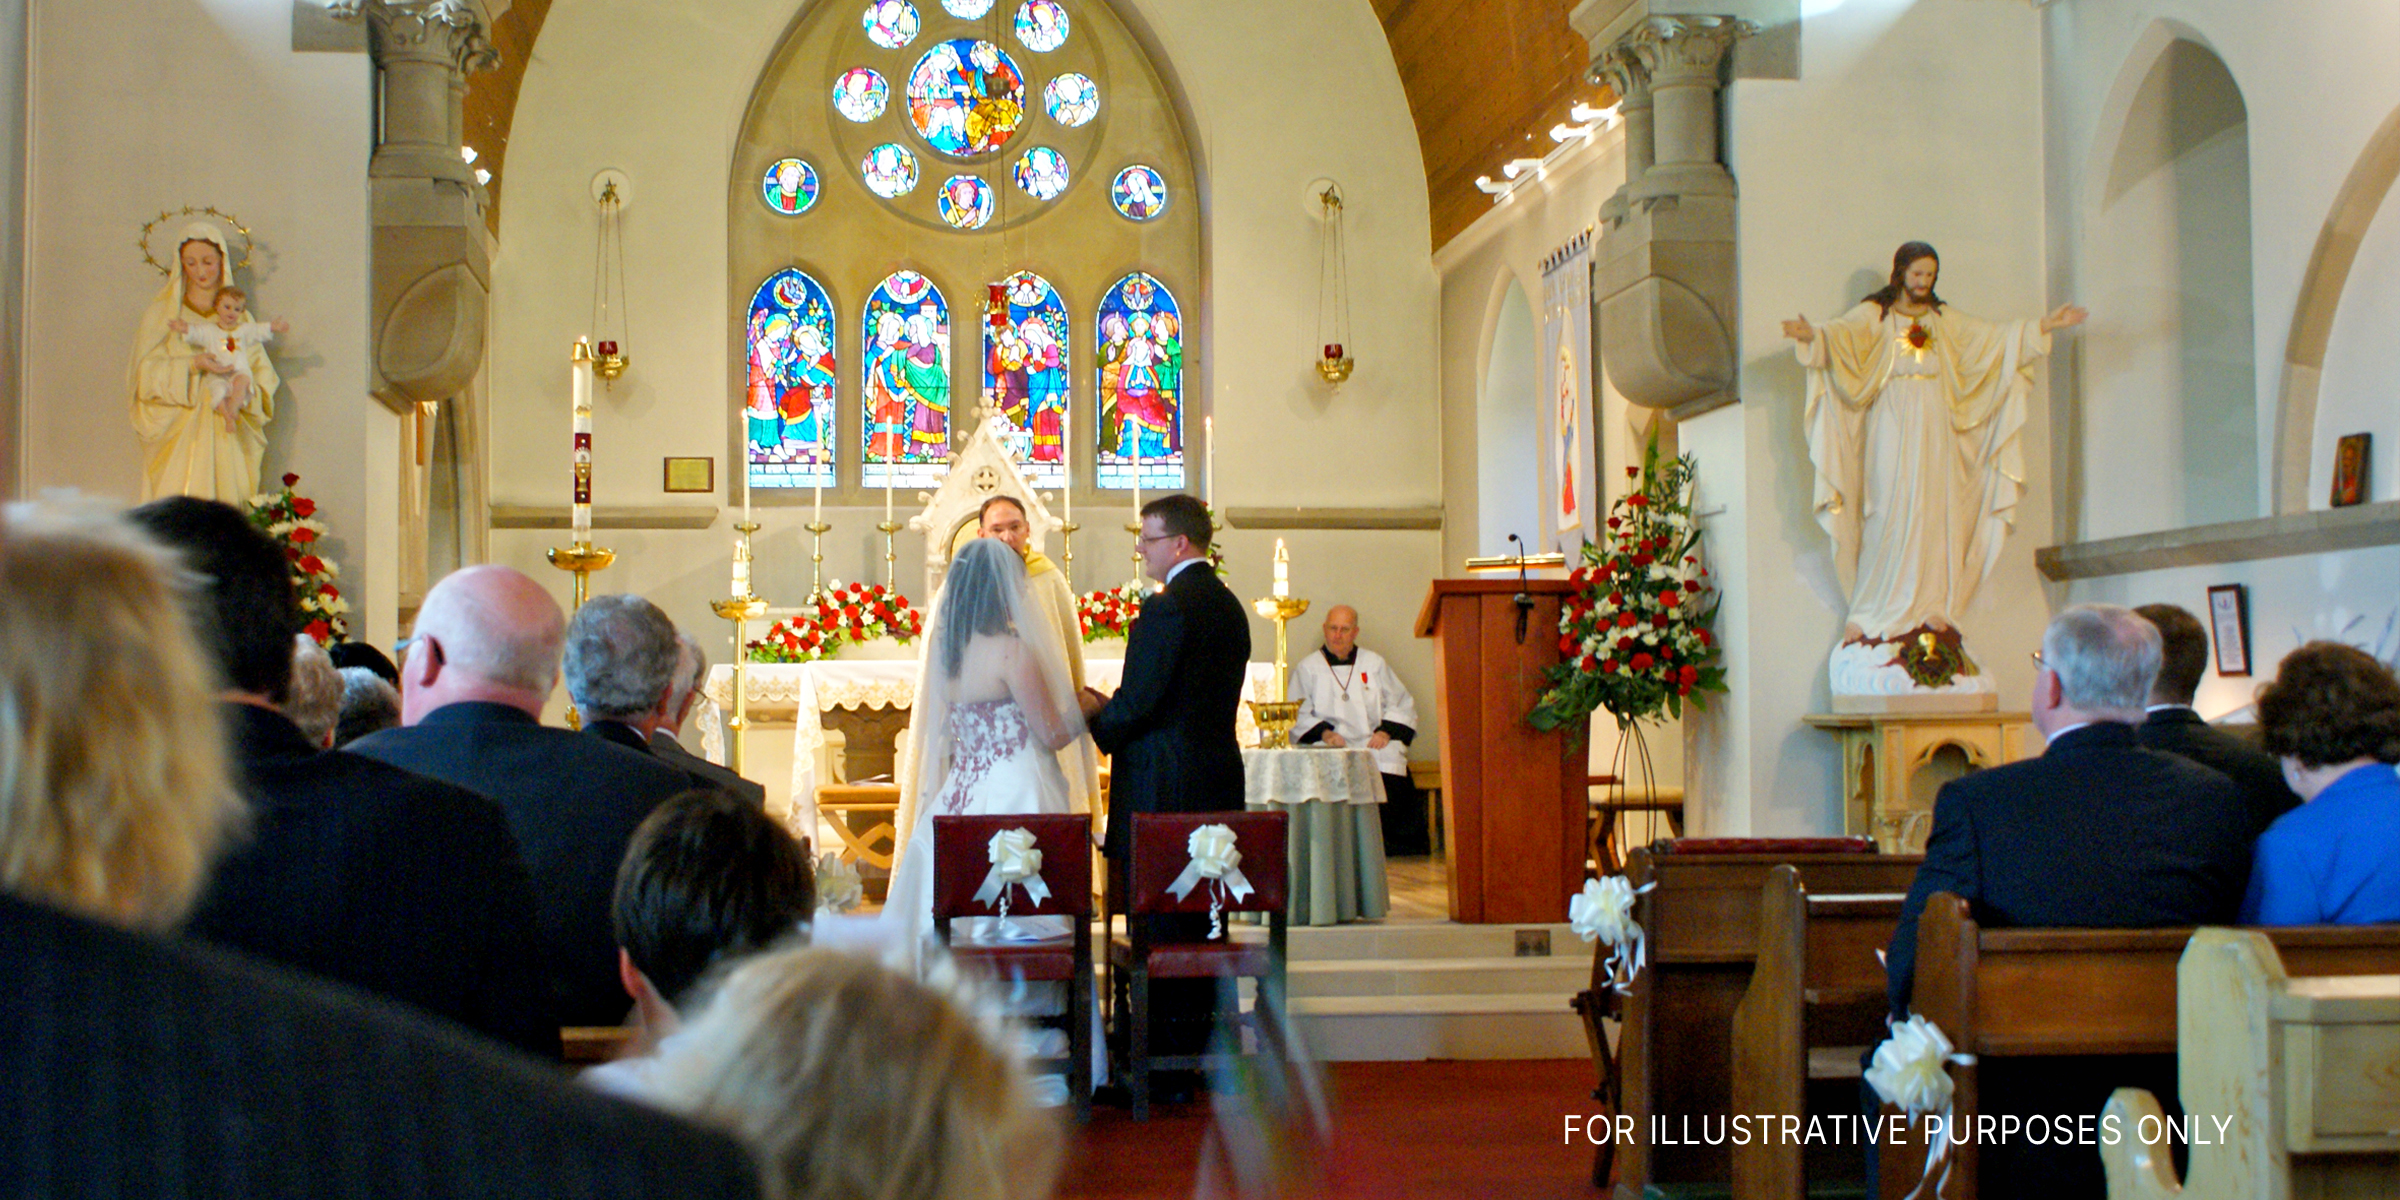 Ehepaar vor dem Altar in der Kirche | Quelle: Flickr